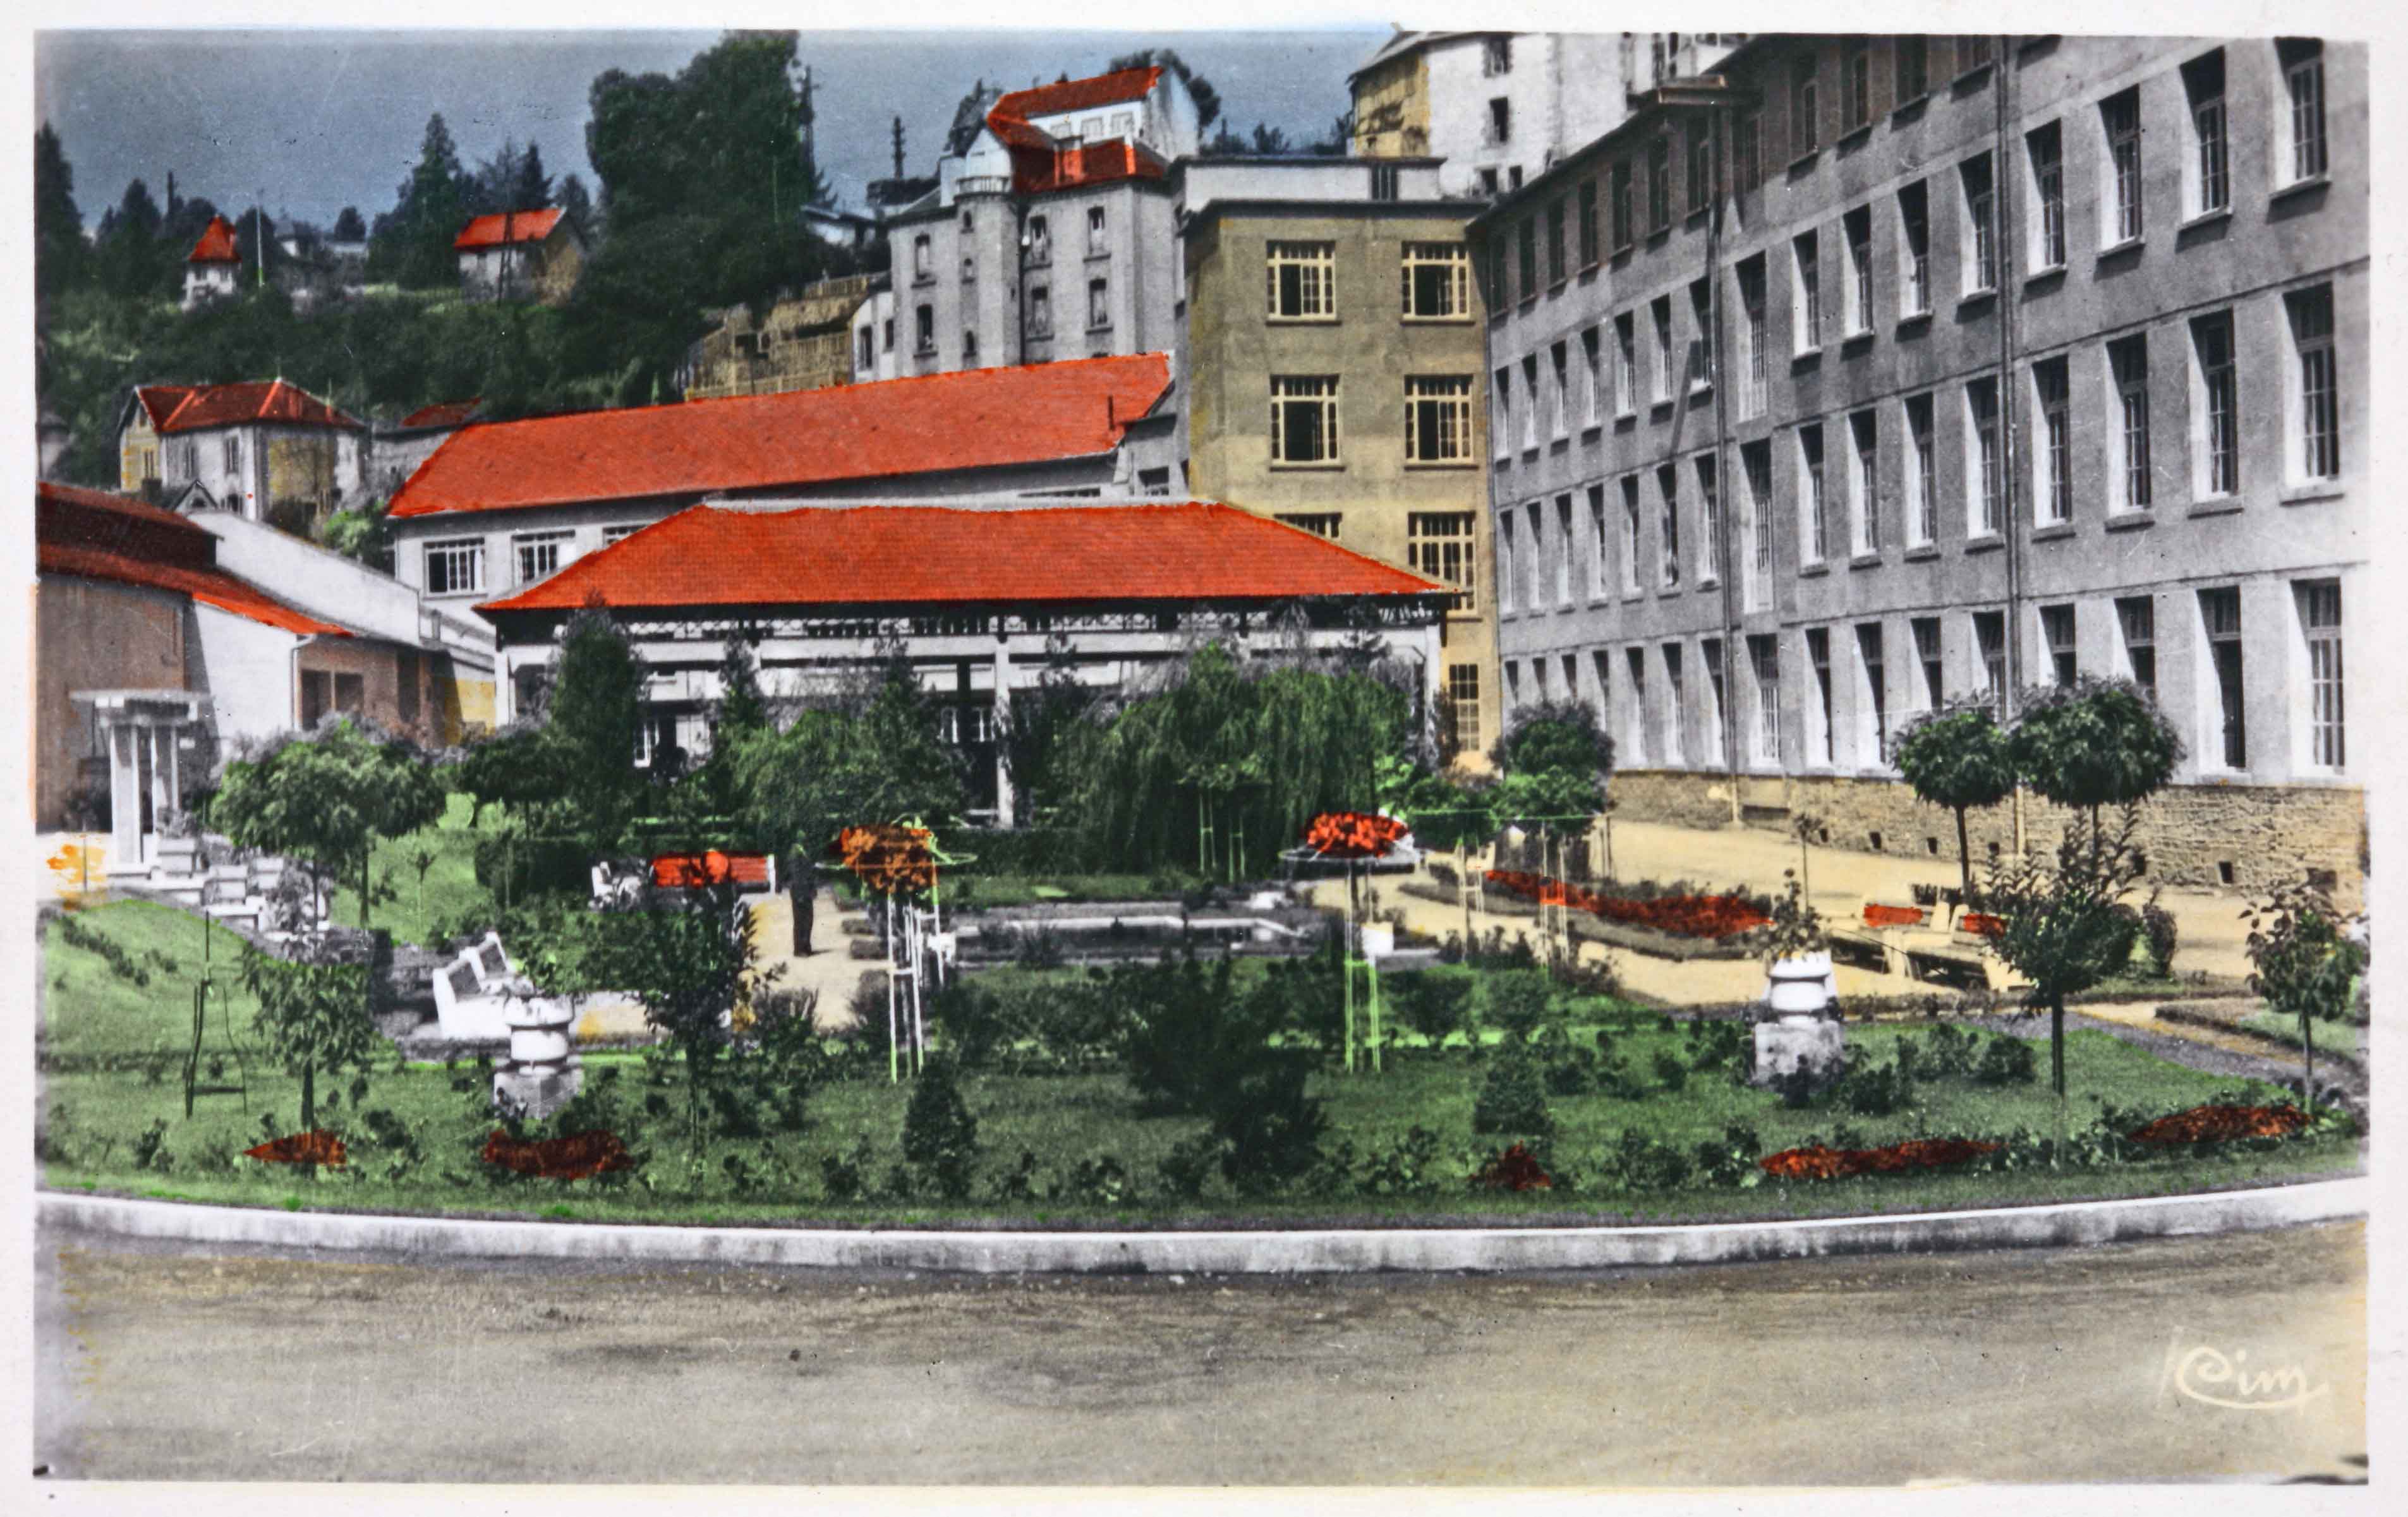 Carte postale colorisée (vers 1950) du site de la FALA, avec son jardin central (Aubusson, centre de documentation du Musée départemental de la Tapisserie)